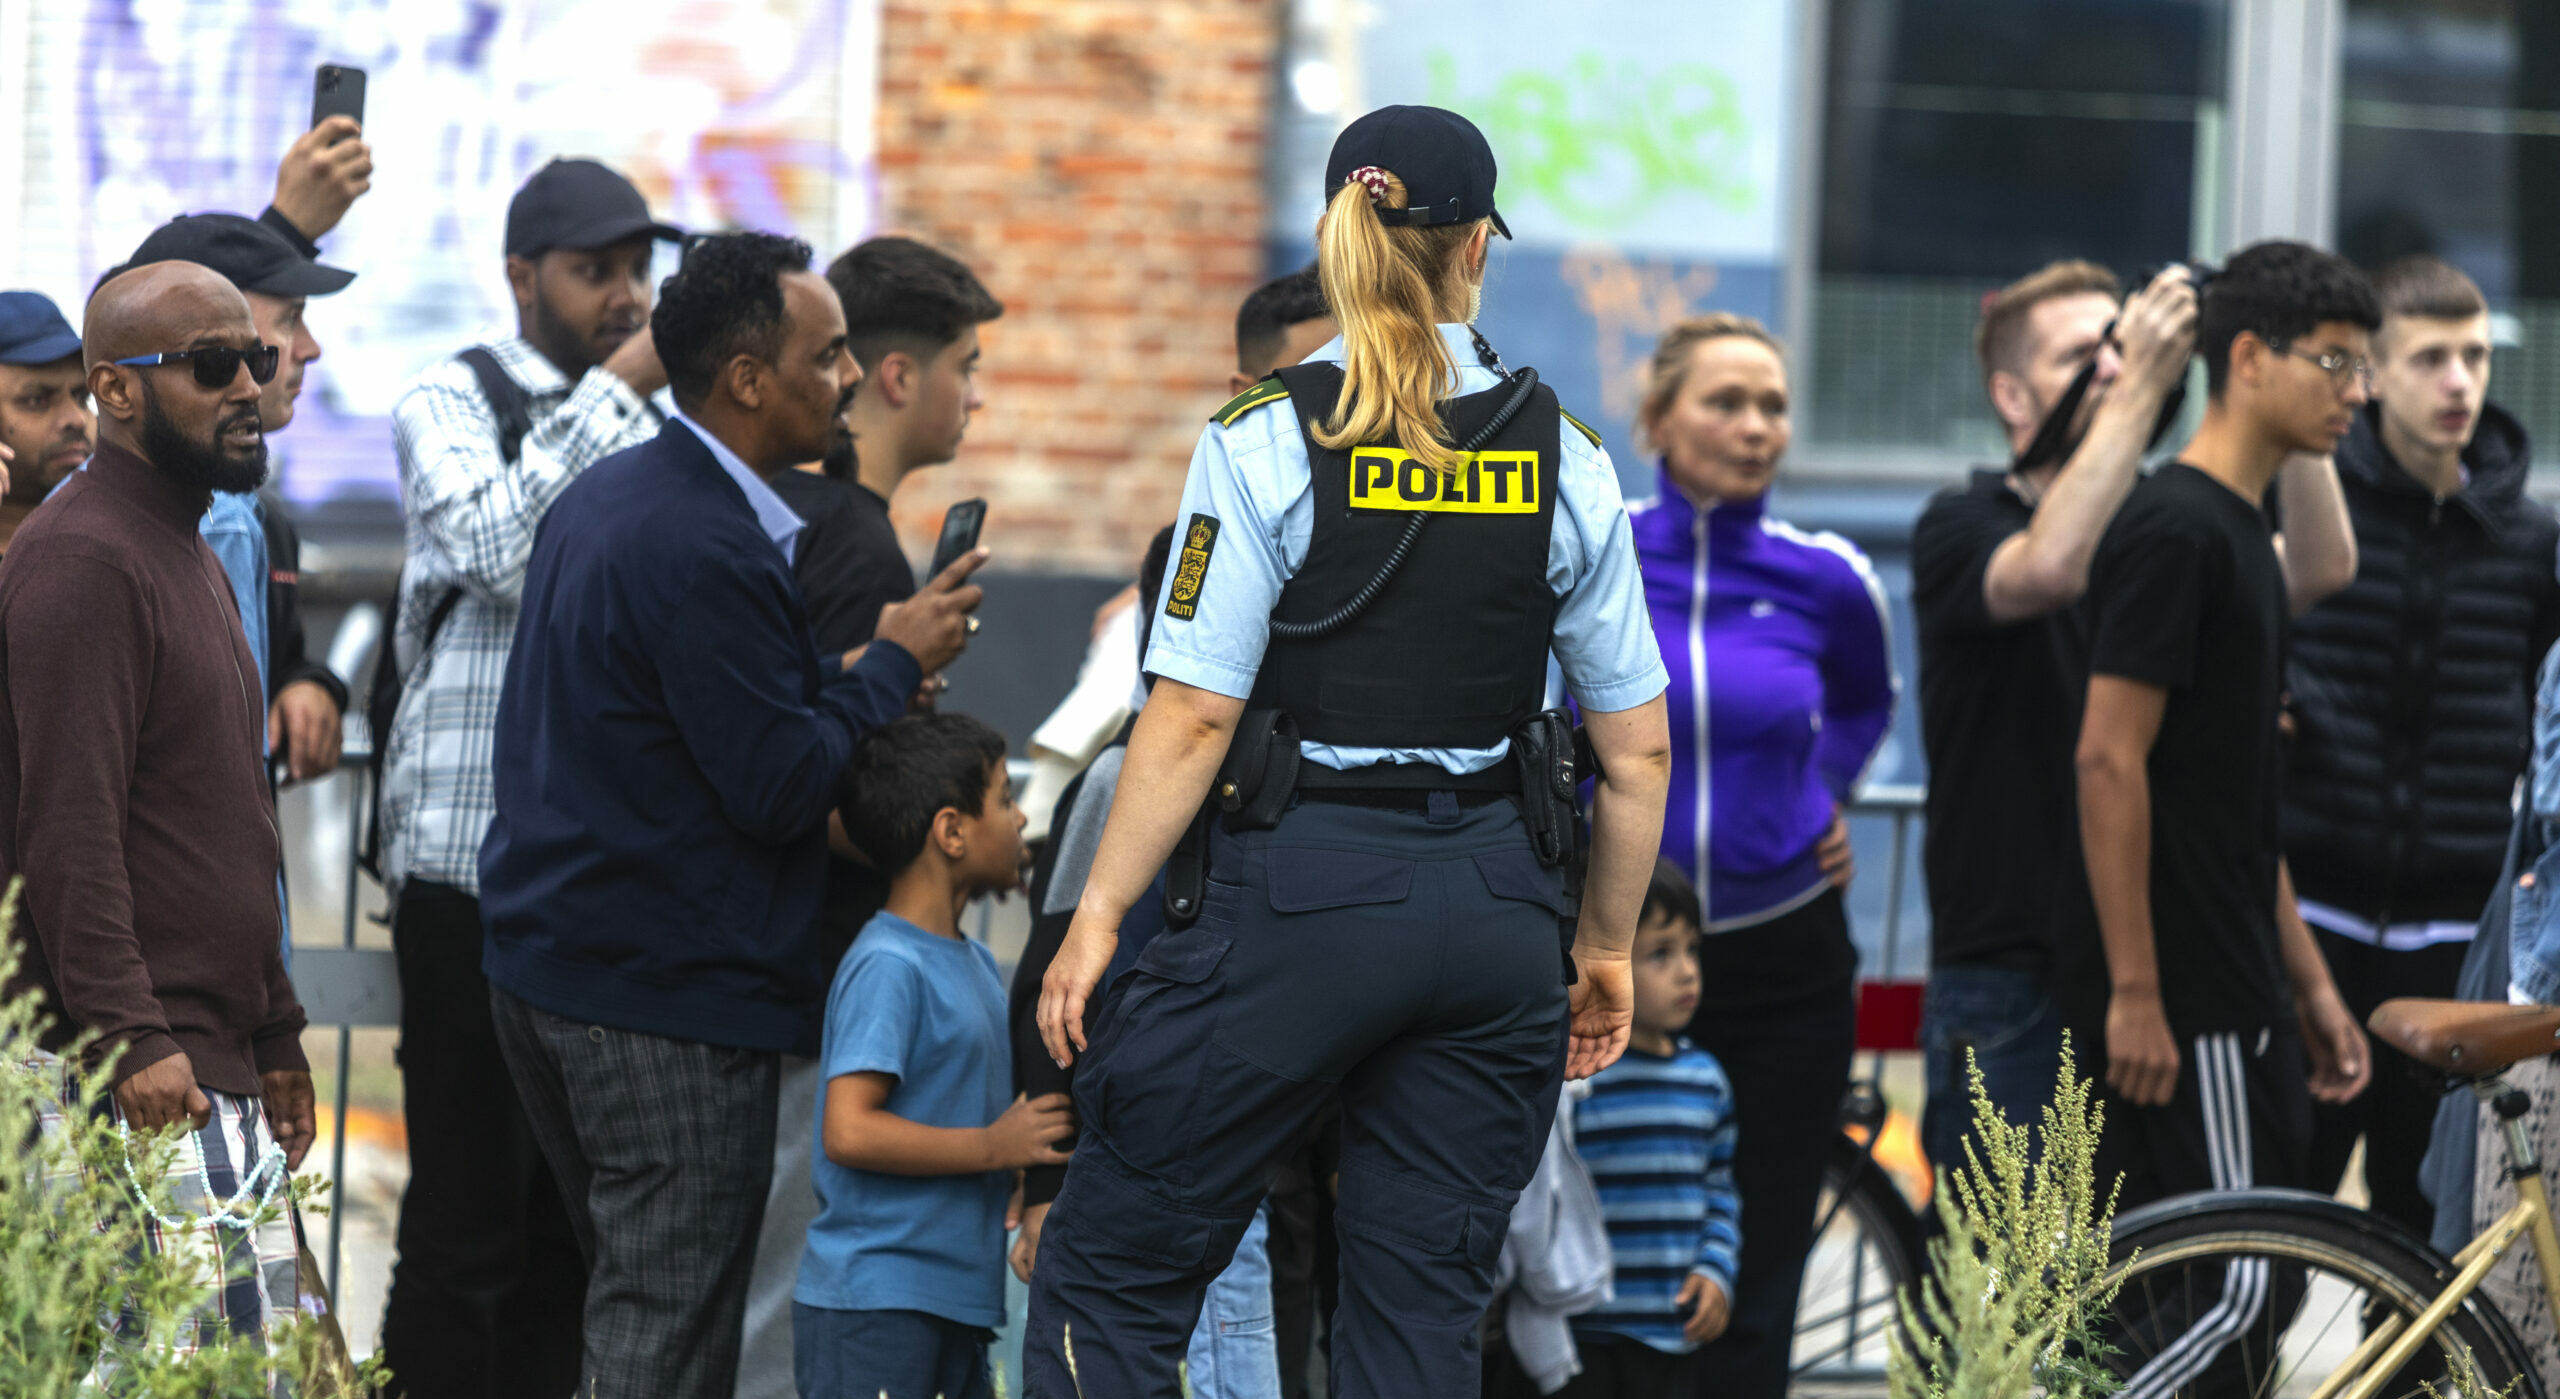 Denmark / Sweden | Terrorism threat in Sweden now high